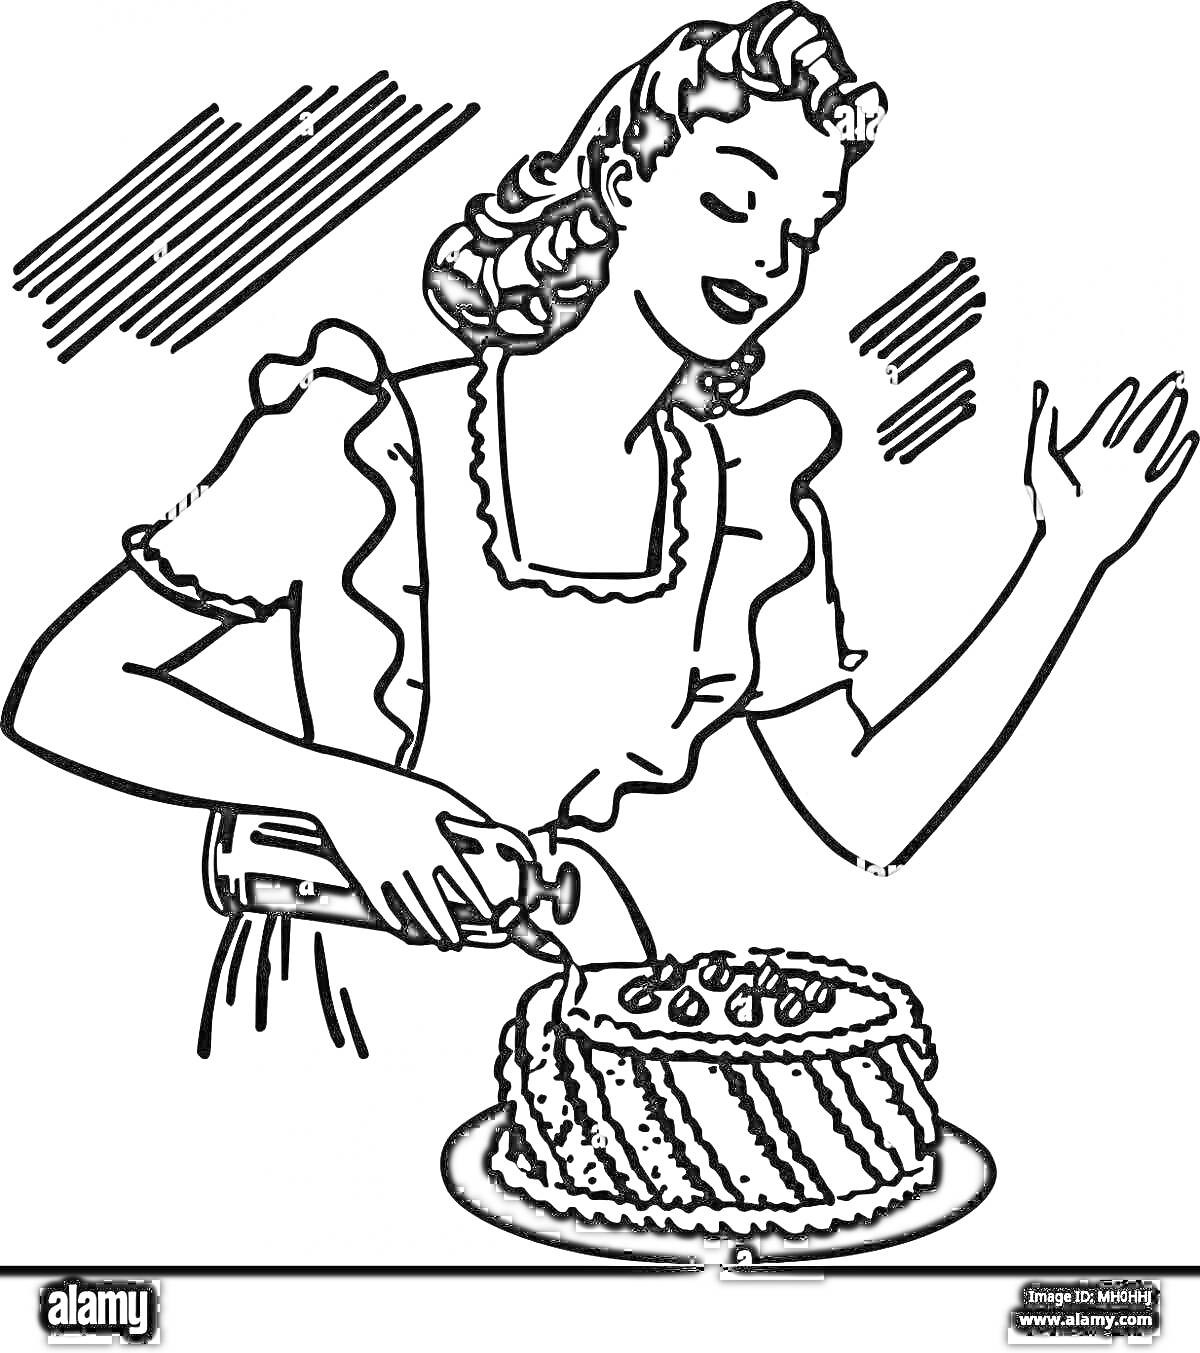 Раскраска Домохозяйка украшает торт